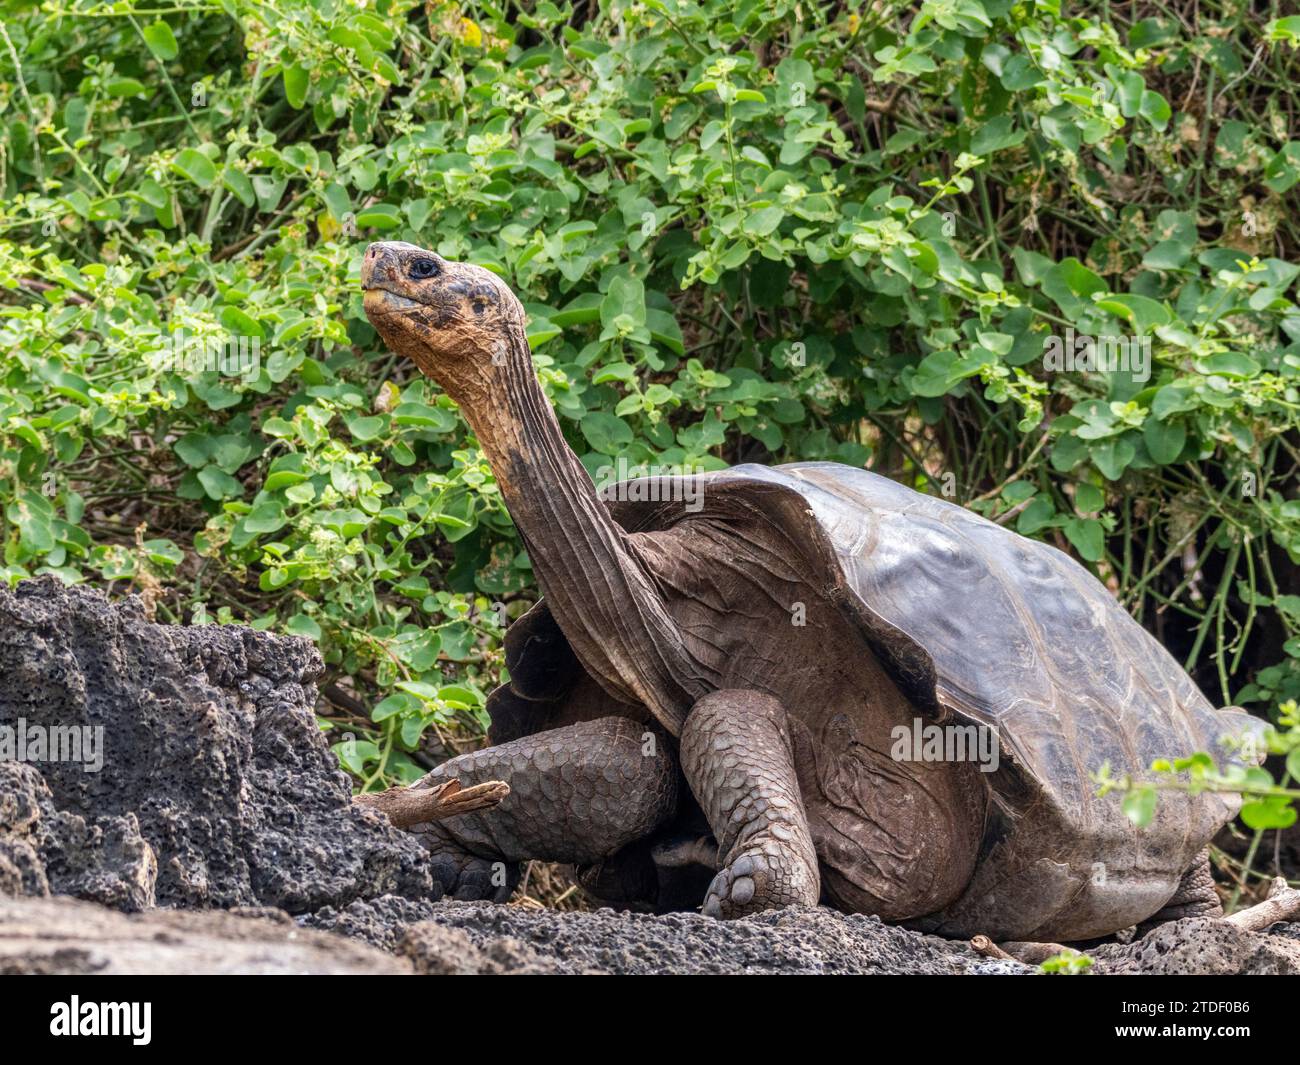 Tortuga gigante cautiva de Galápagos (Chelonoidis spp), Estación de Investigación Charles Darwin, Isla Santa Cruz, Islas Galápagos, Patrimonio de la Humanidad de la UNESCO Foto de stock